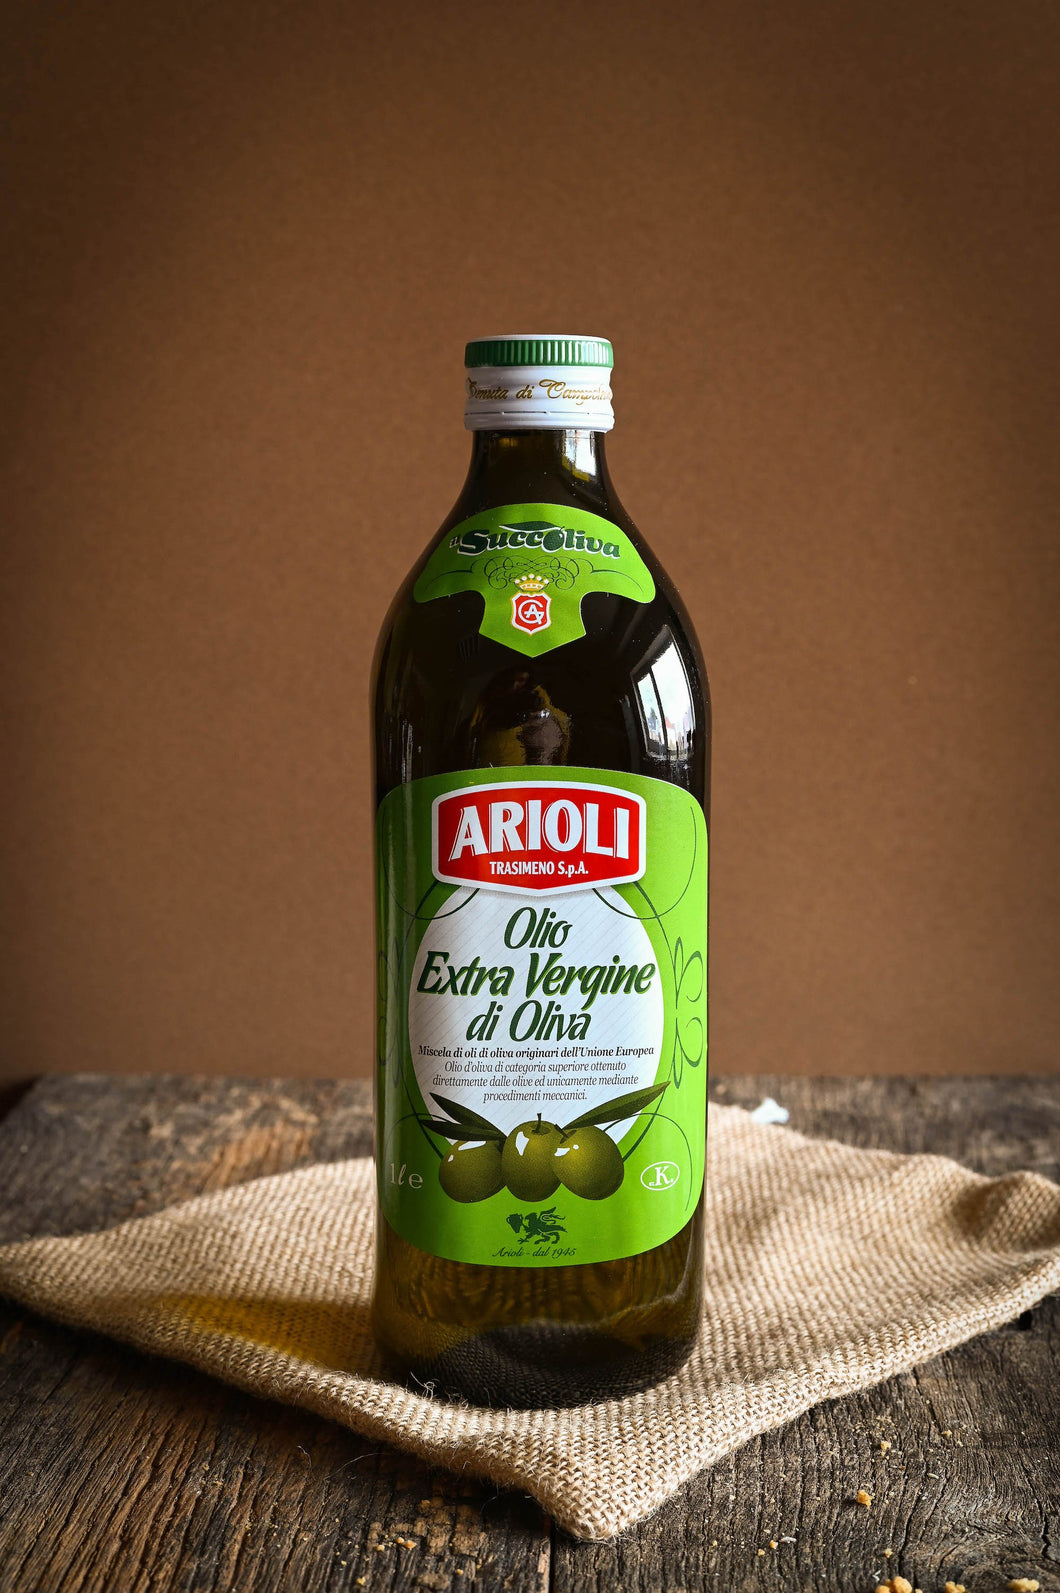 ARIOLI - Huile d'olive extra vierge (1l) - Les produits du soleil